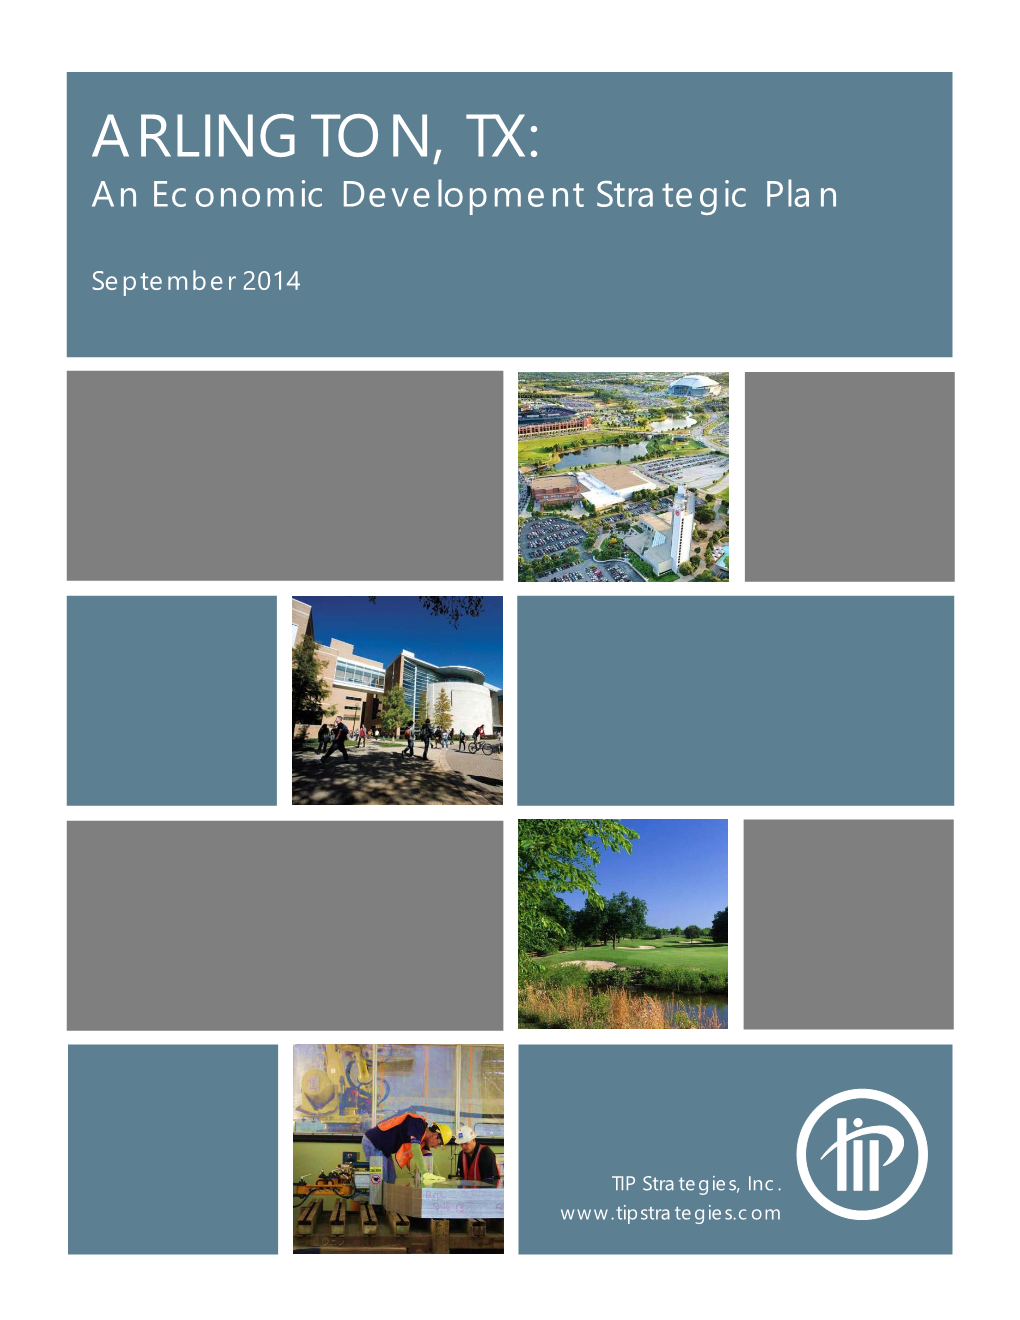 ARLINGTON, TX: an Economic Development Strategic Plan